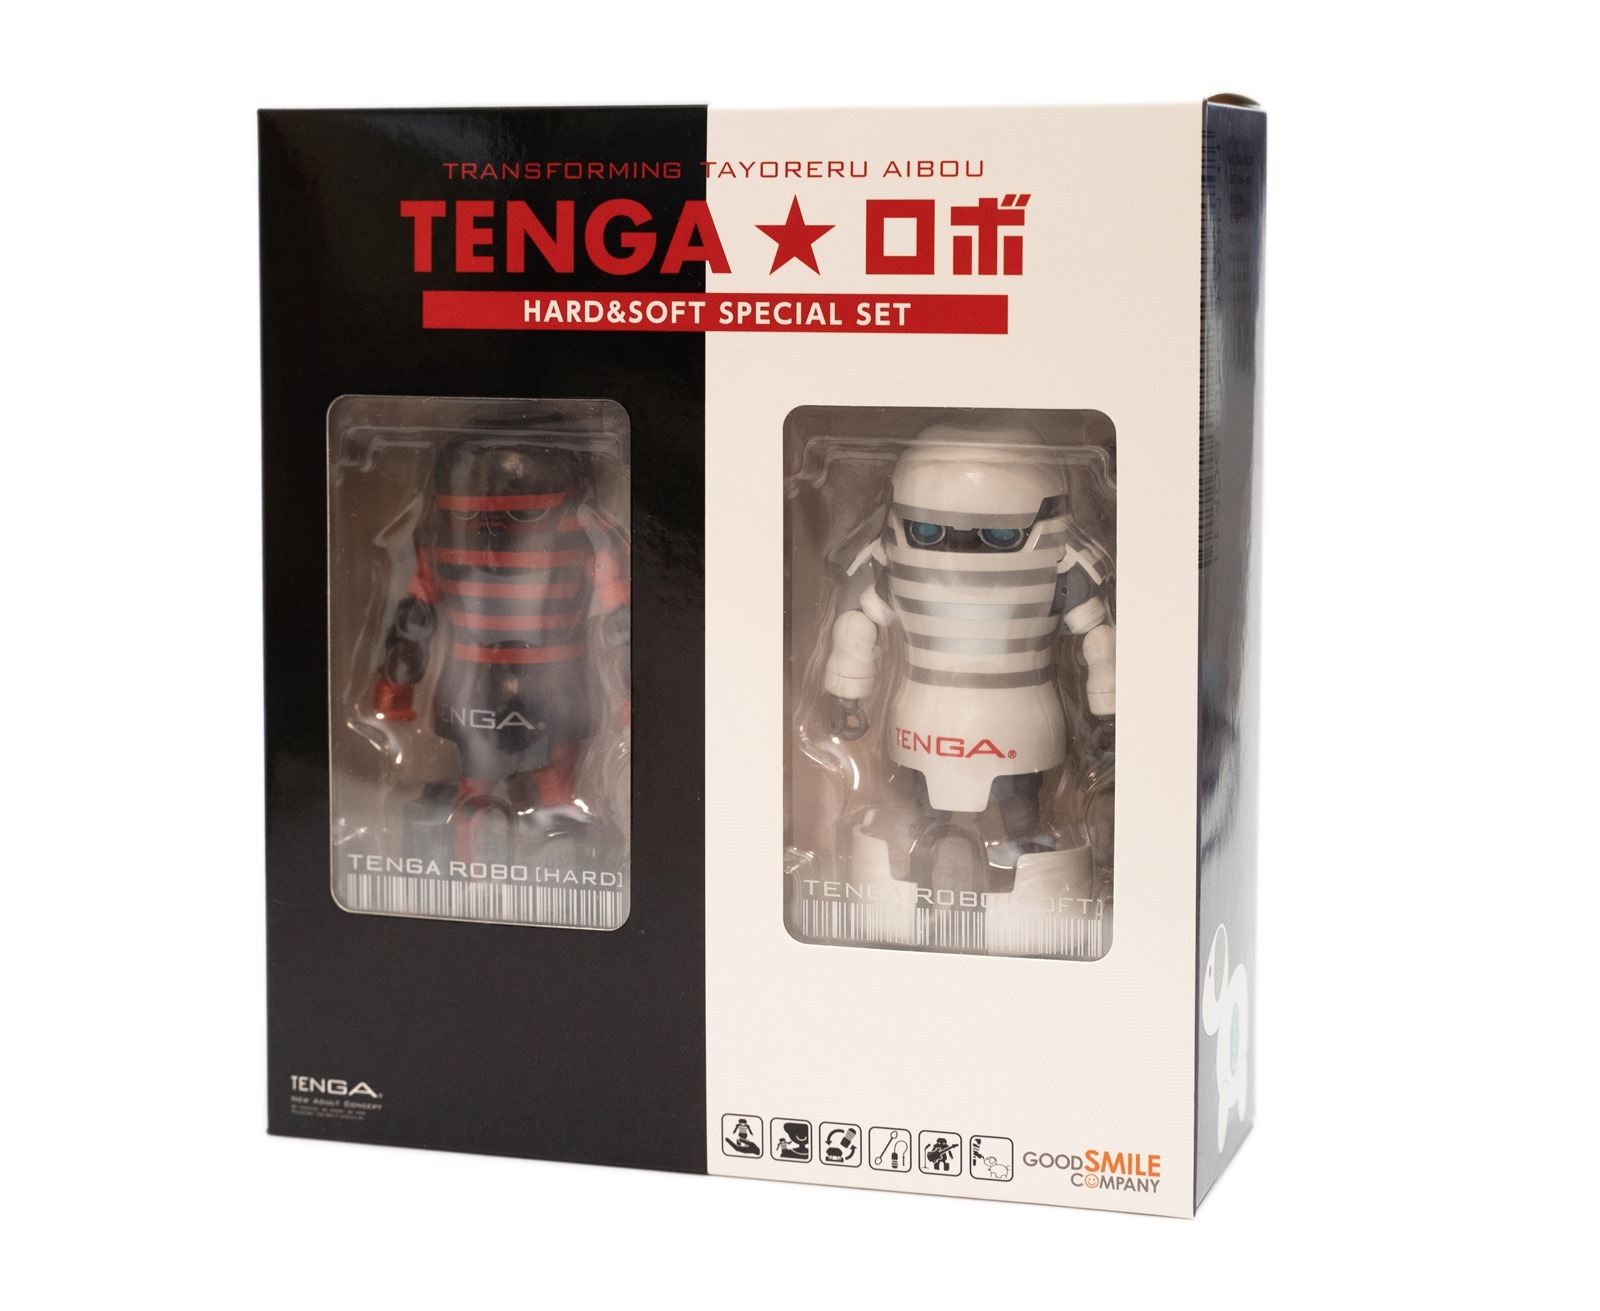 最壞壞與溫柔的 TENGA 機器人 HARD&amp;SOFT 初回限定套裝開箱！一樣開箱沒有試用！ @3C 達人廖阿輝